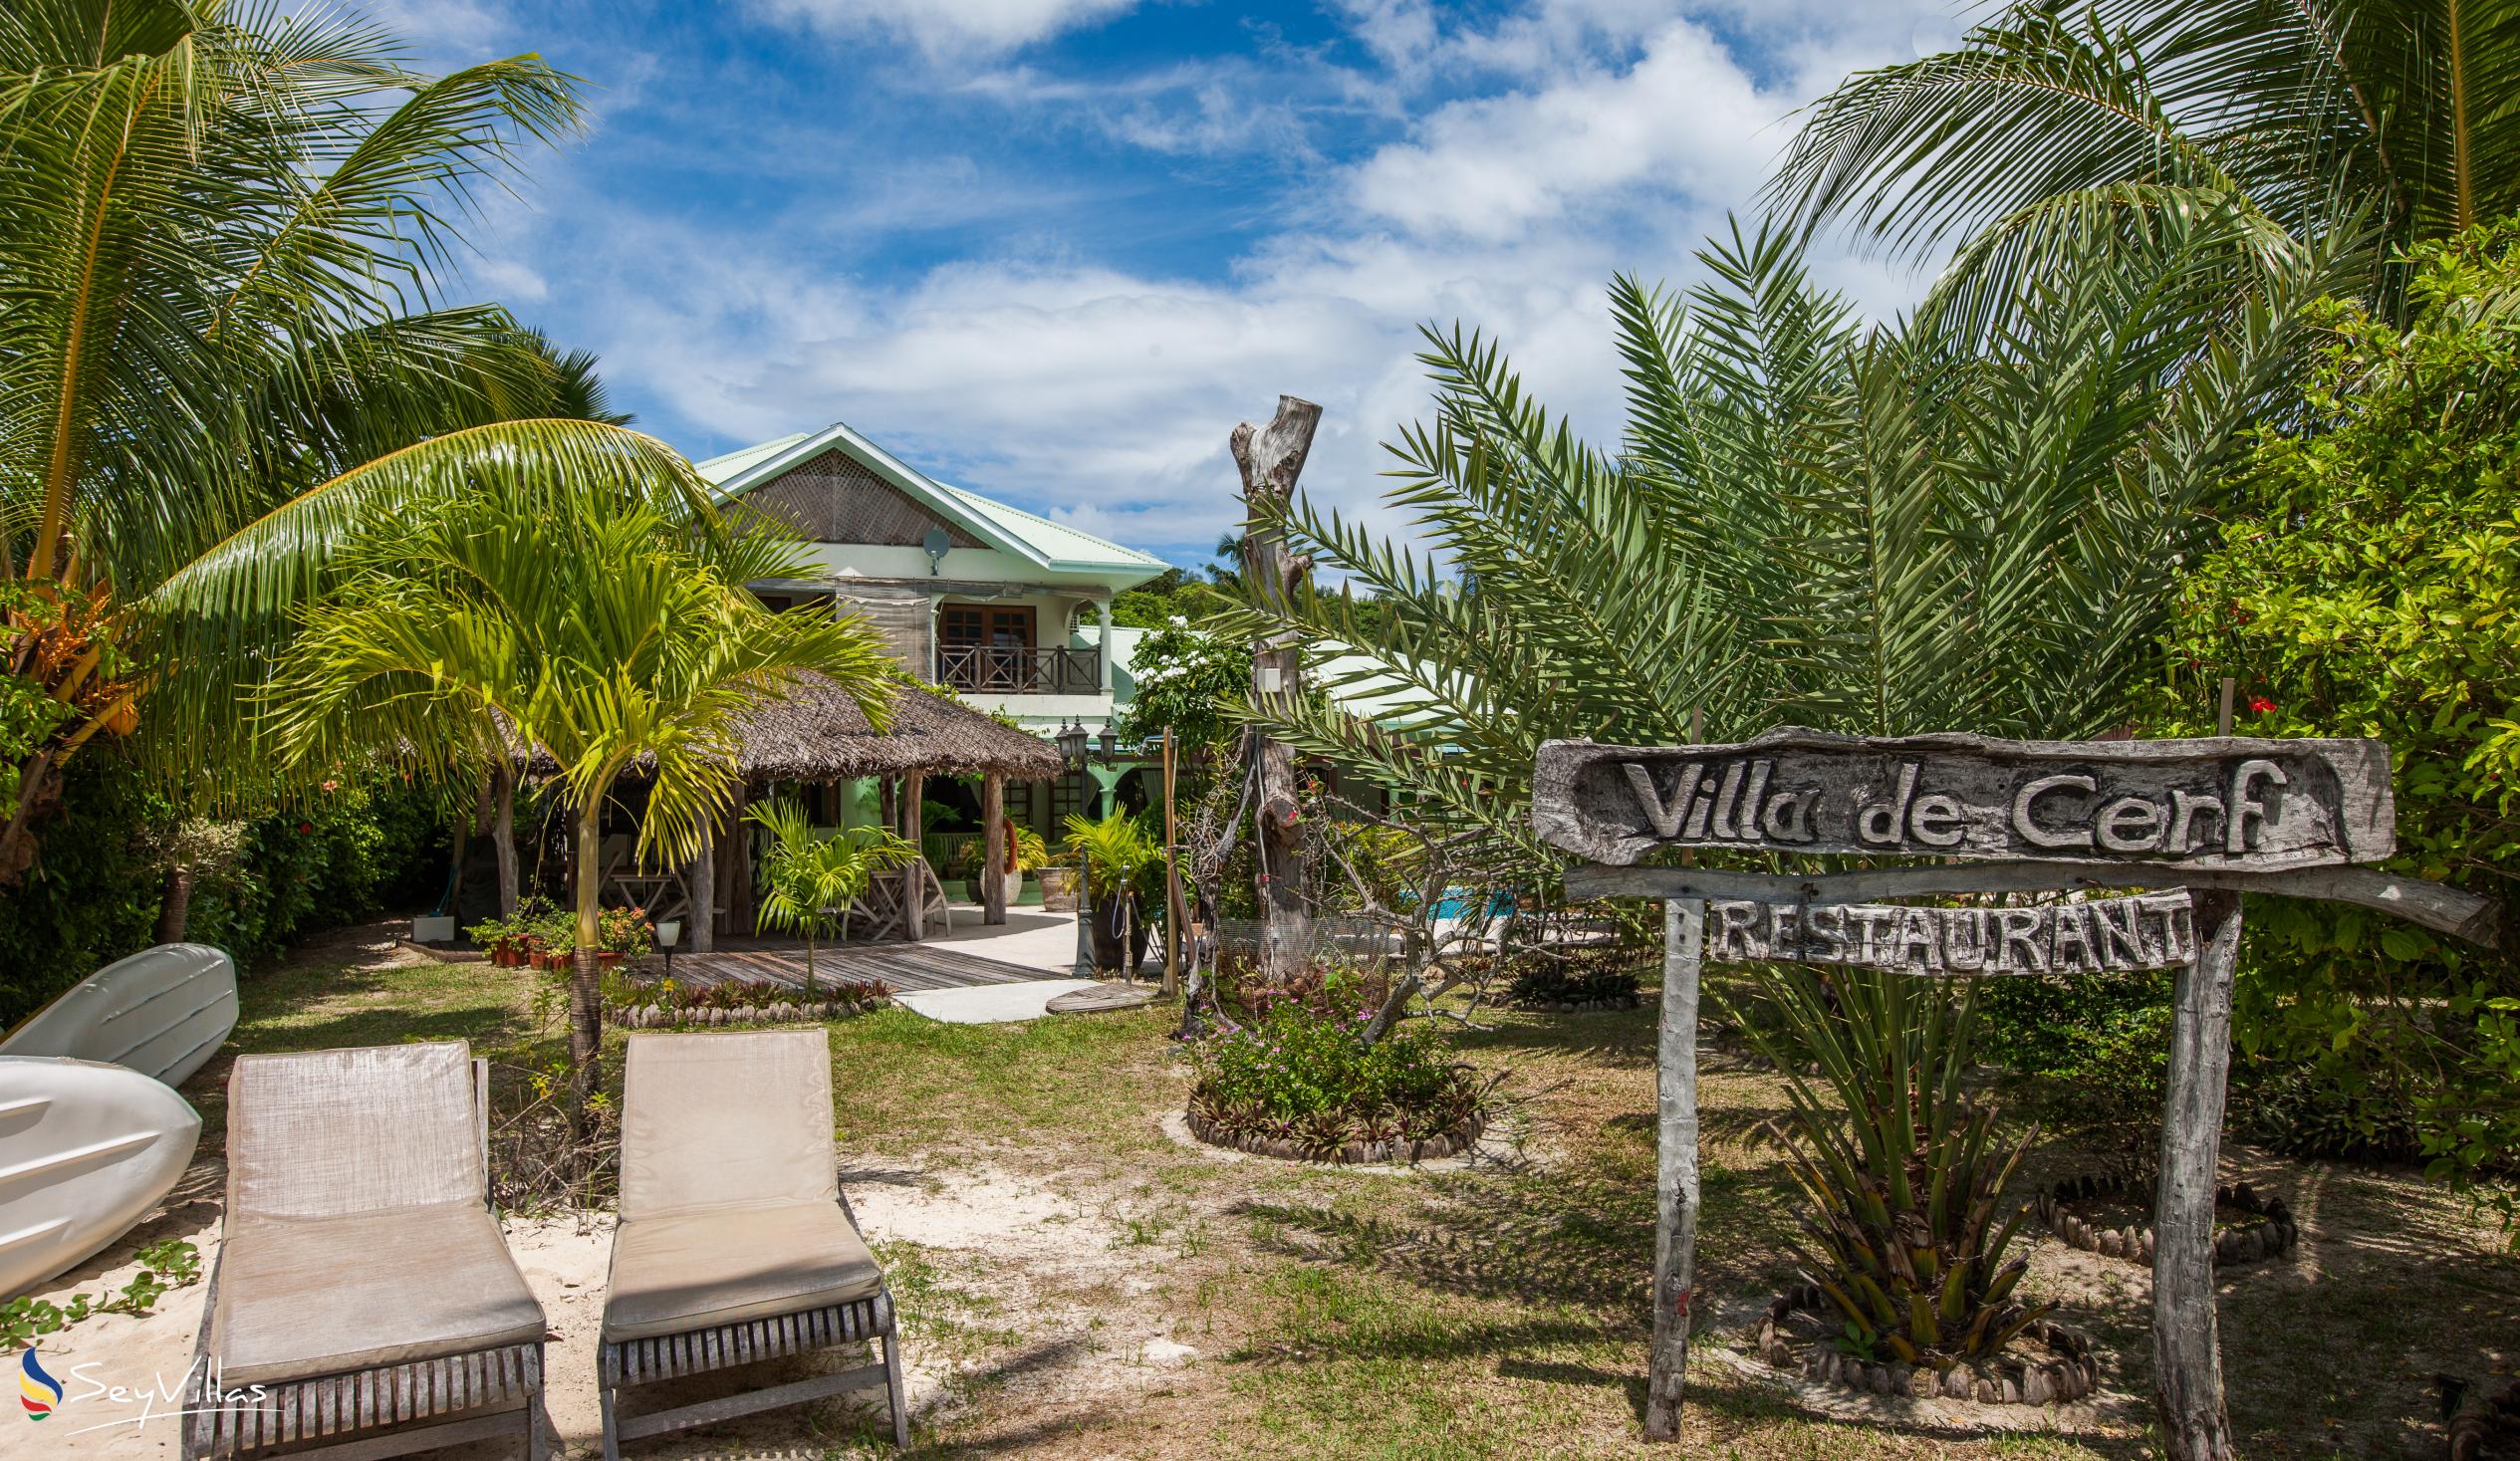 Foto 13: Villa de Cerf - Extérieur - Cerf Island (Seychelles)